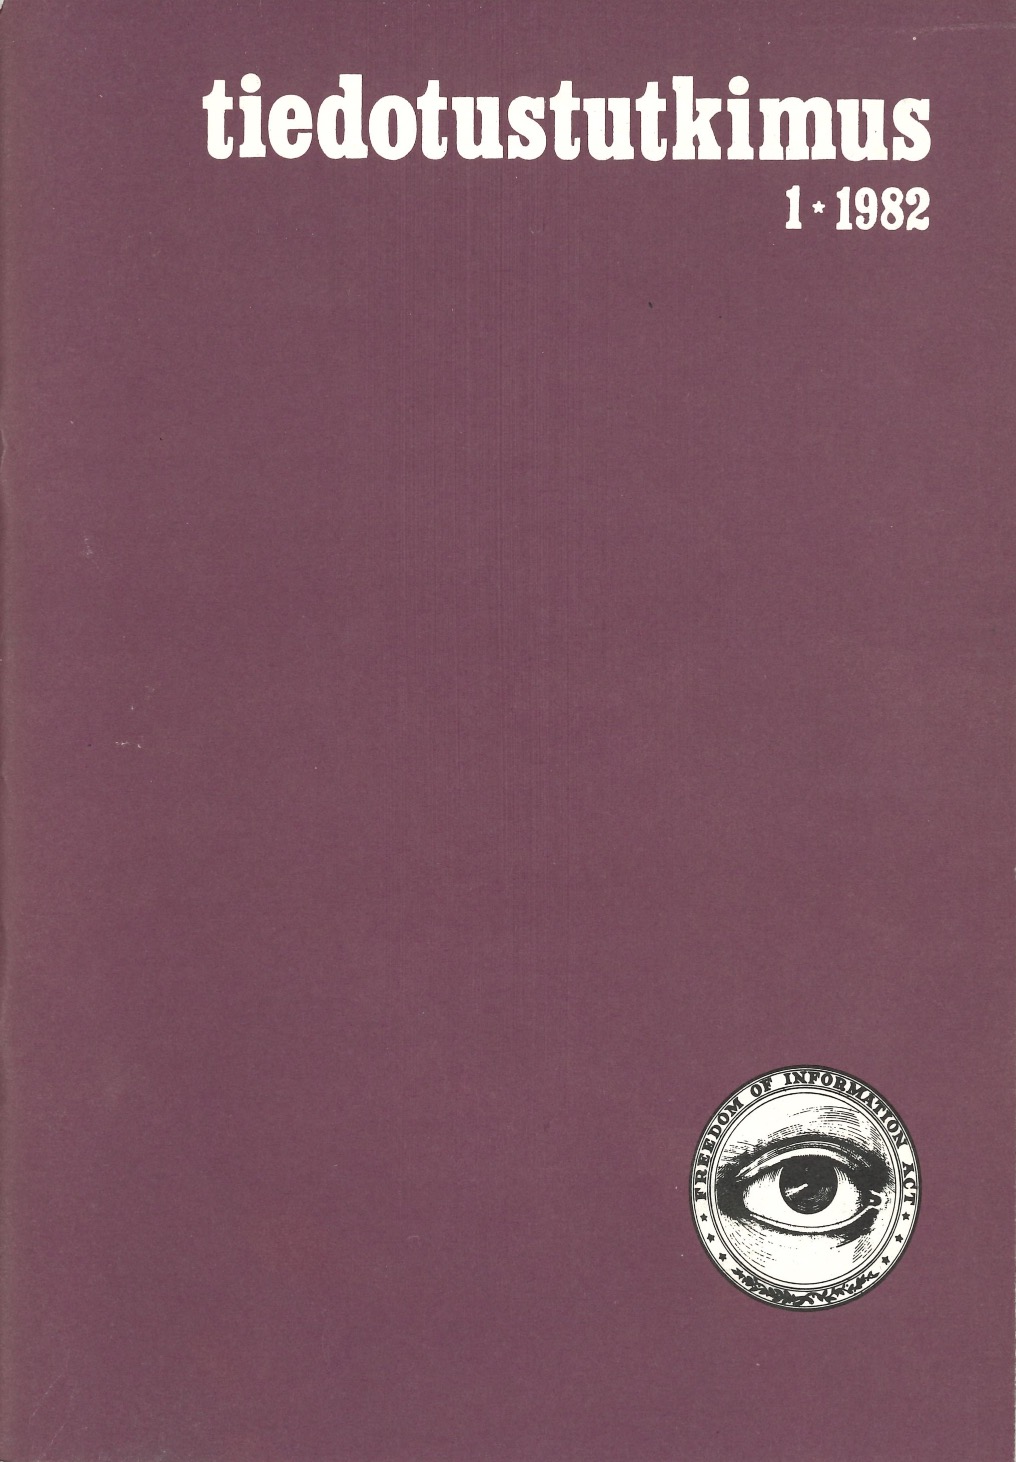 					Näytä Vol 5 Nro 1 (1982)
				